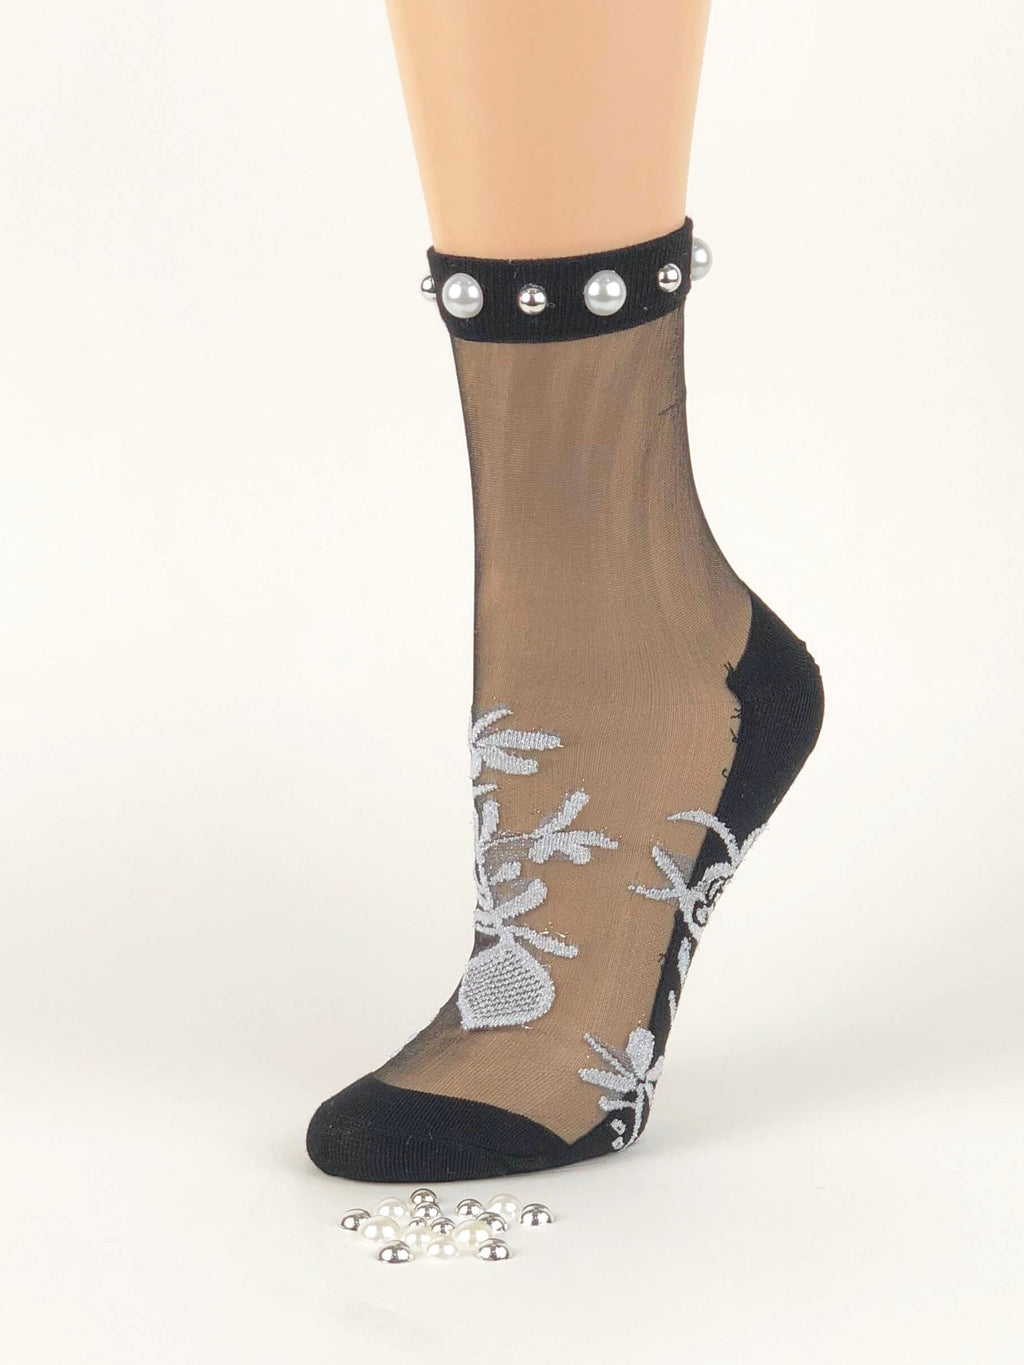 Charming Pearls Sheer Socks - Global Trendz Fashion®